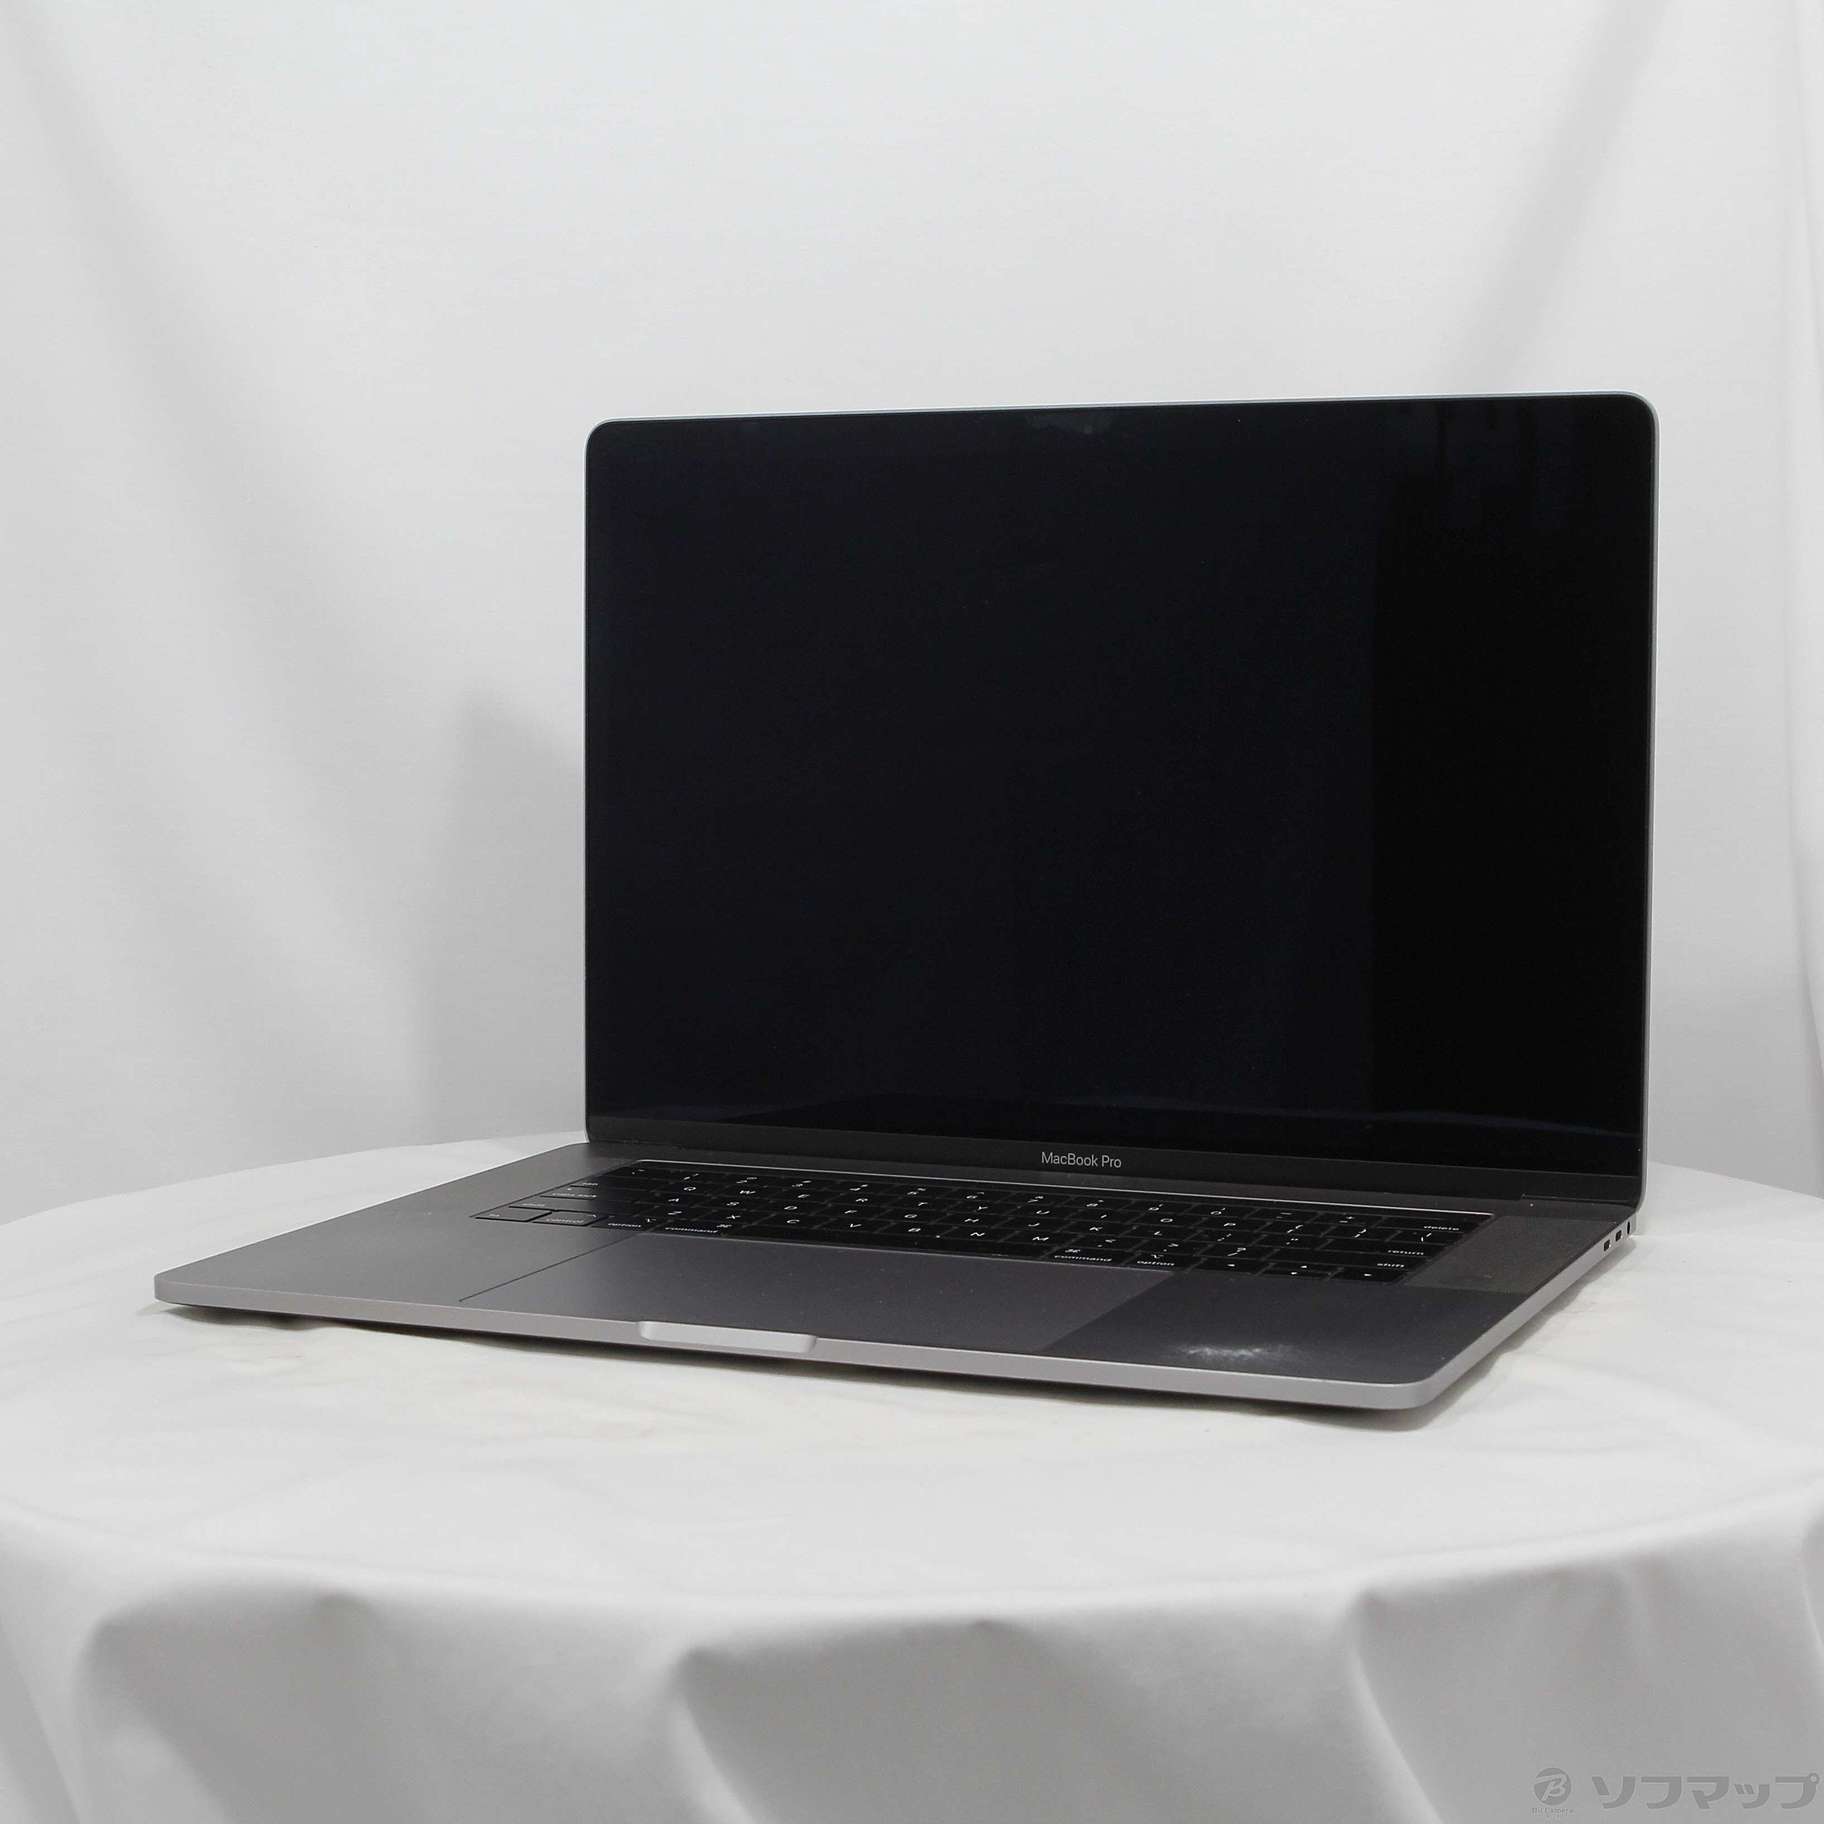 15インチ MacBook Pro 2019年モデル MV902J/A